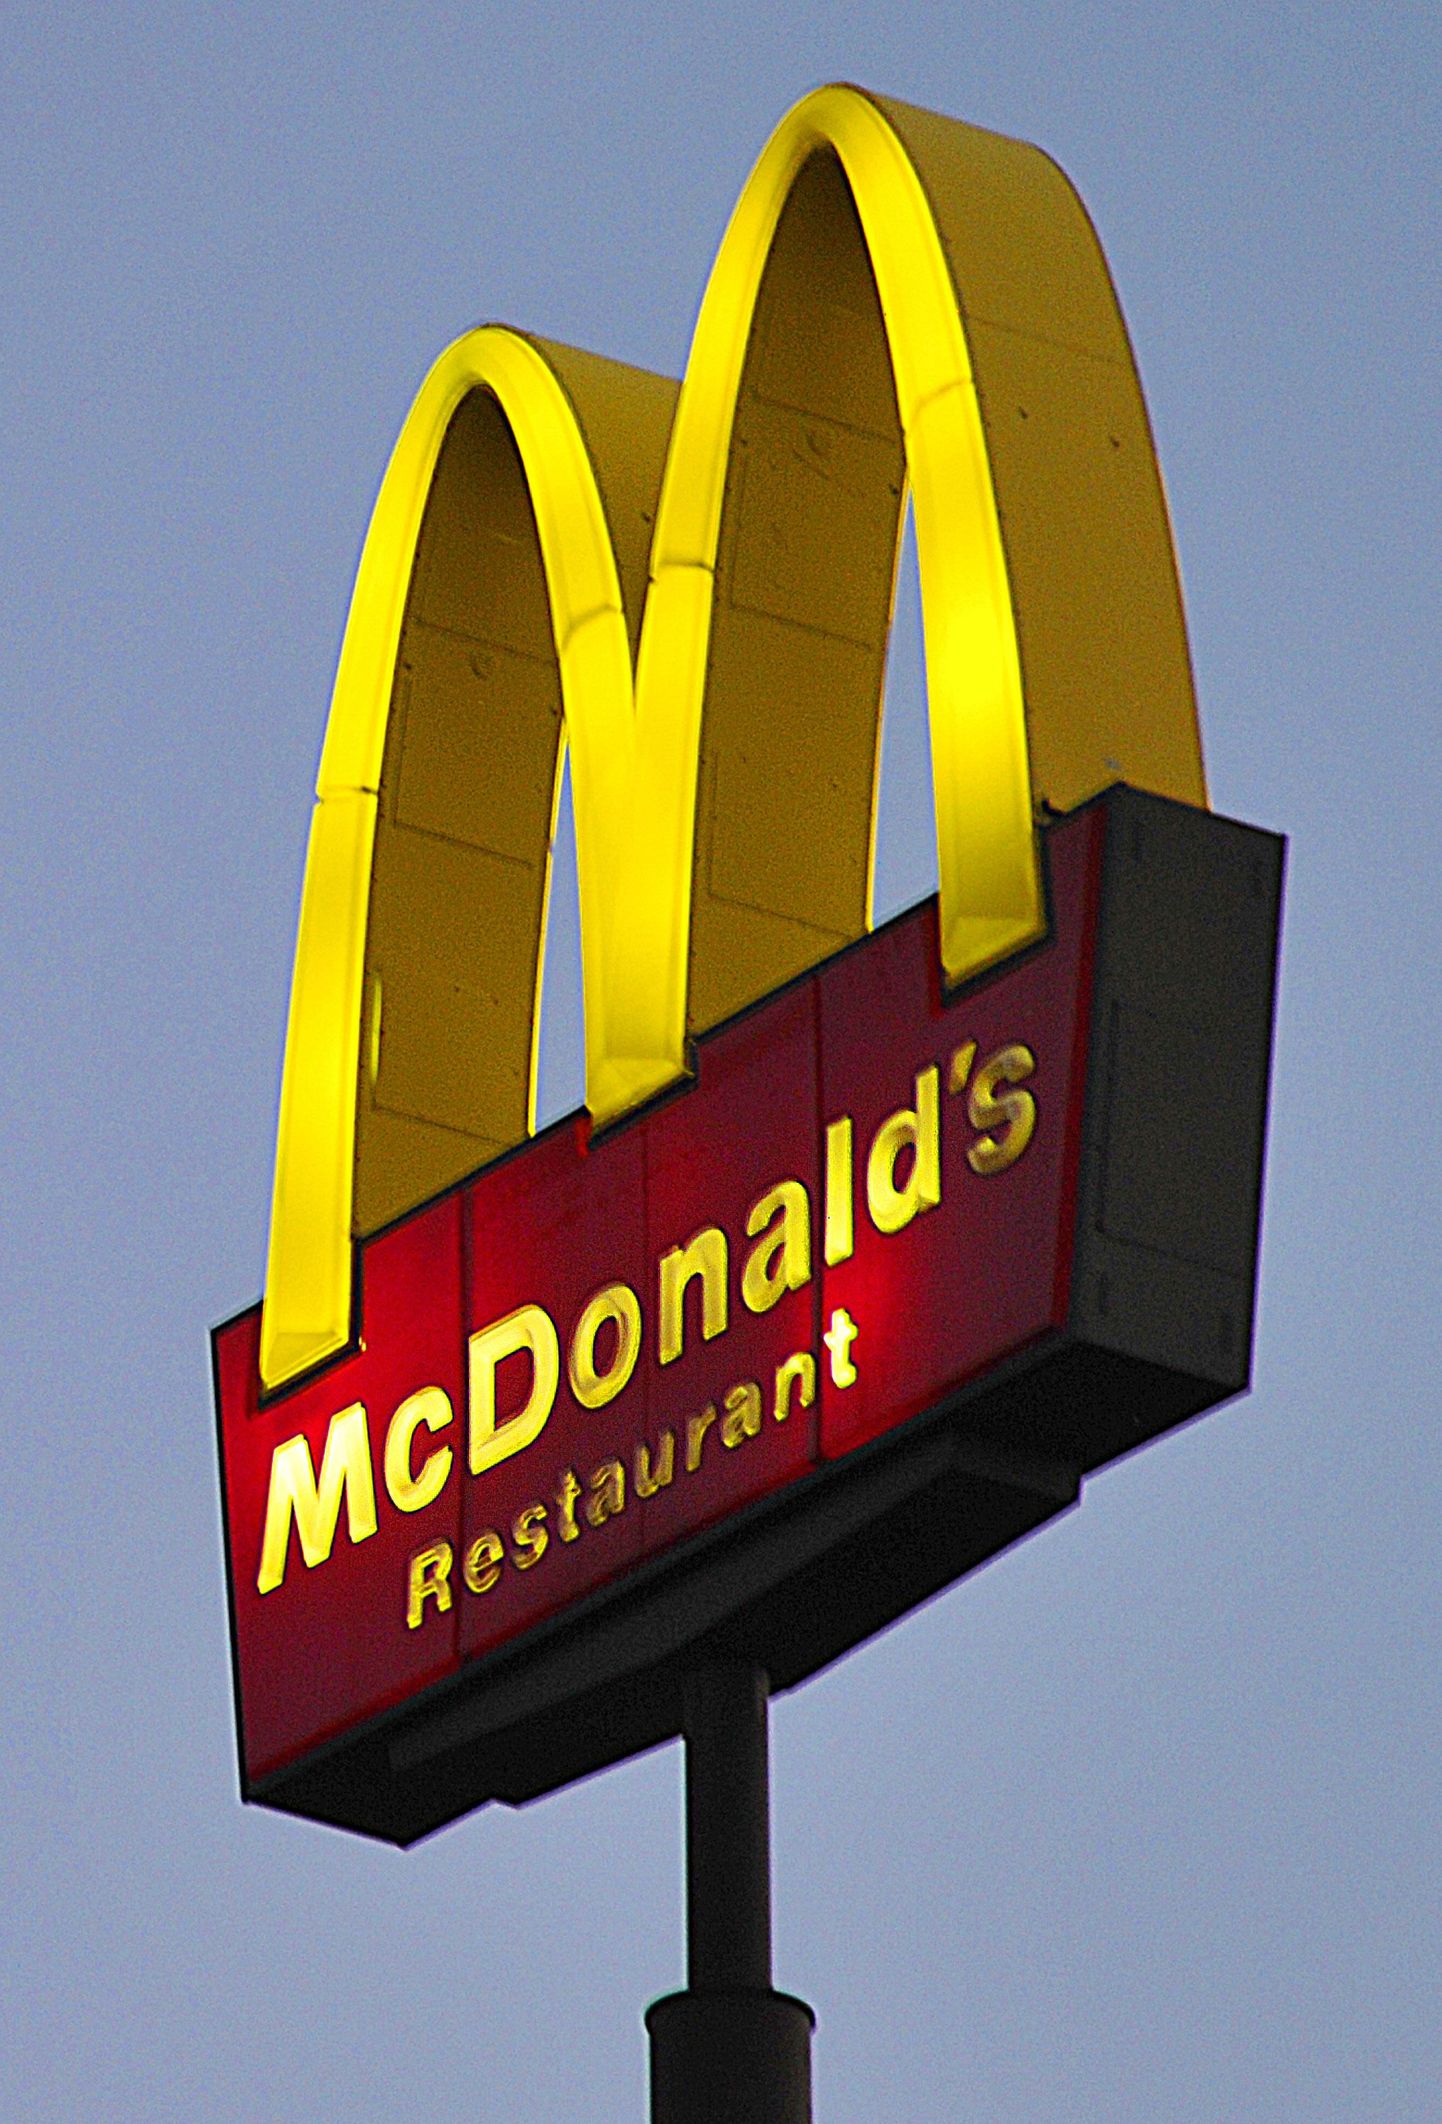 McDonaldsi logo.